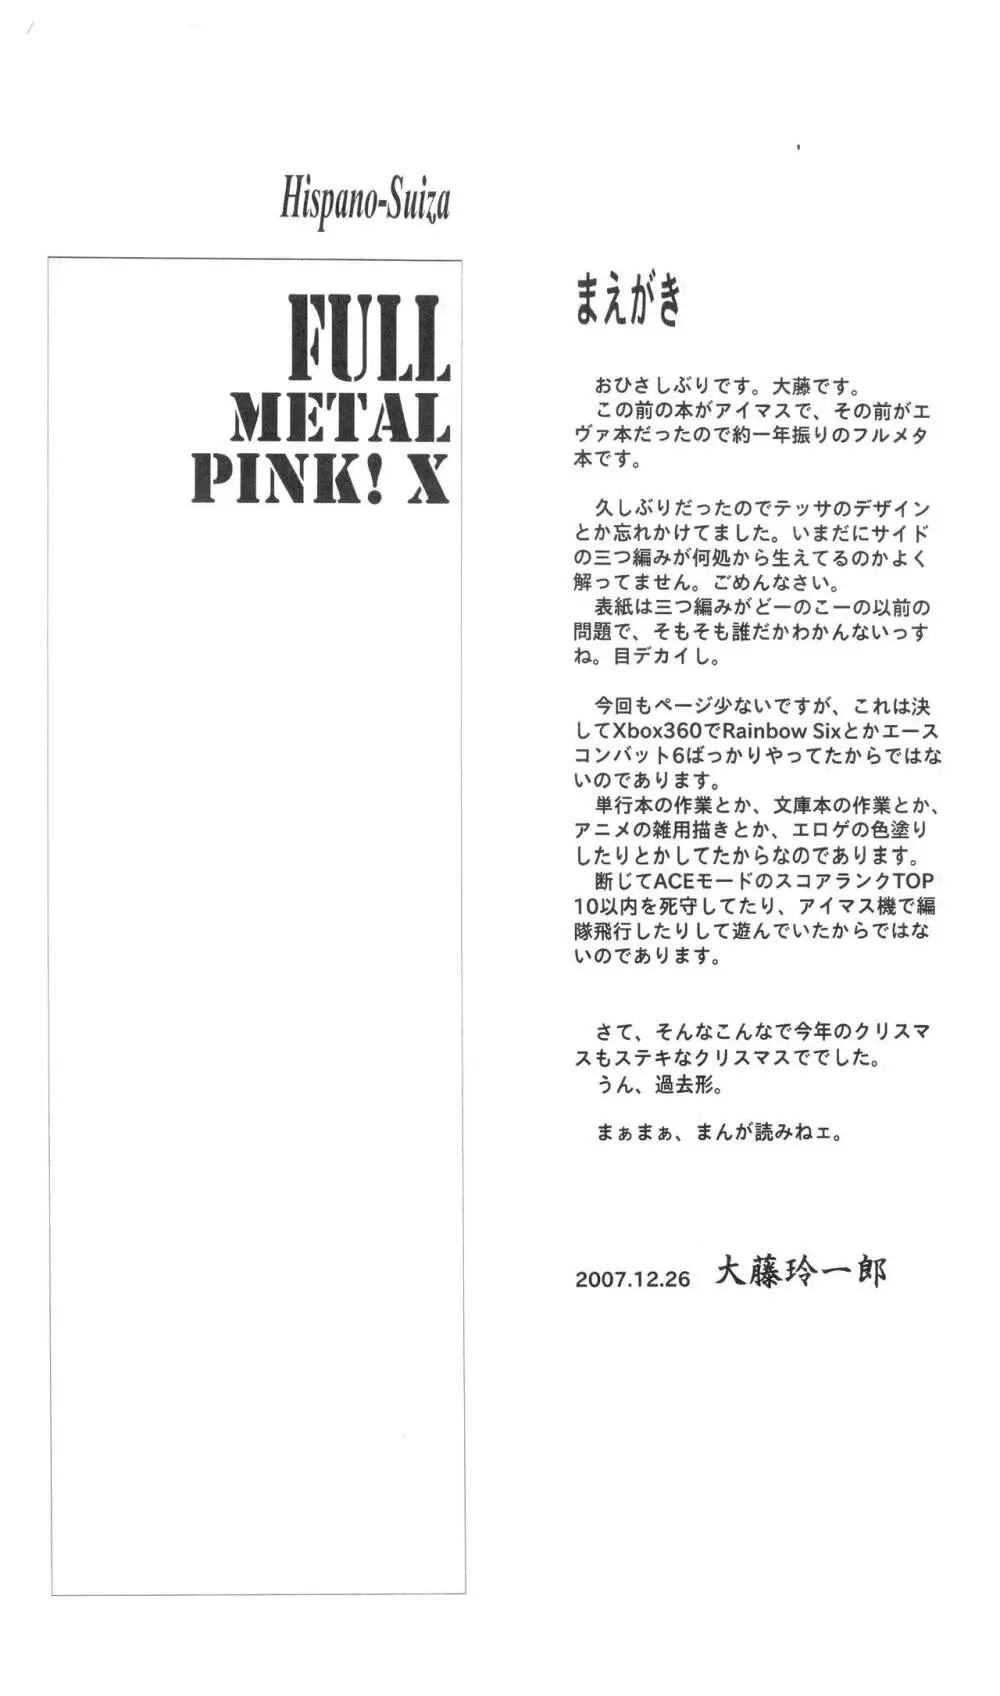 FULL METAL PINK! X 2ページ